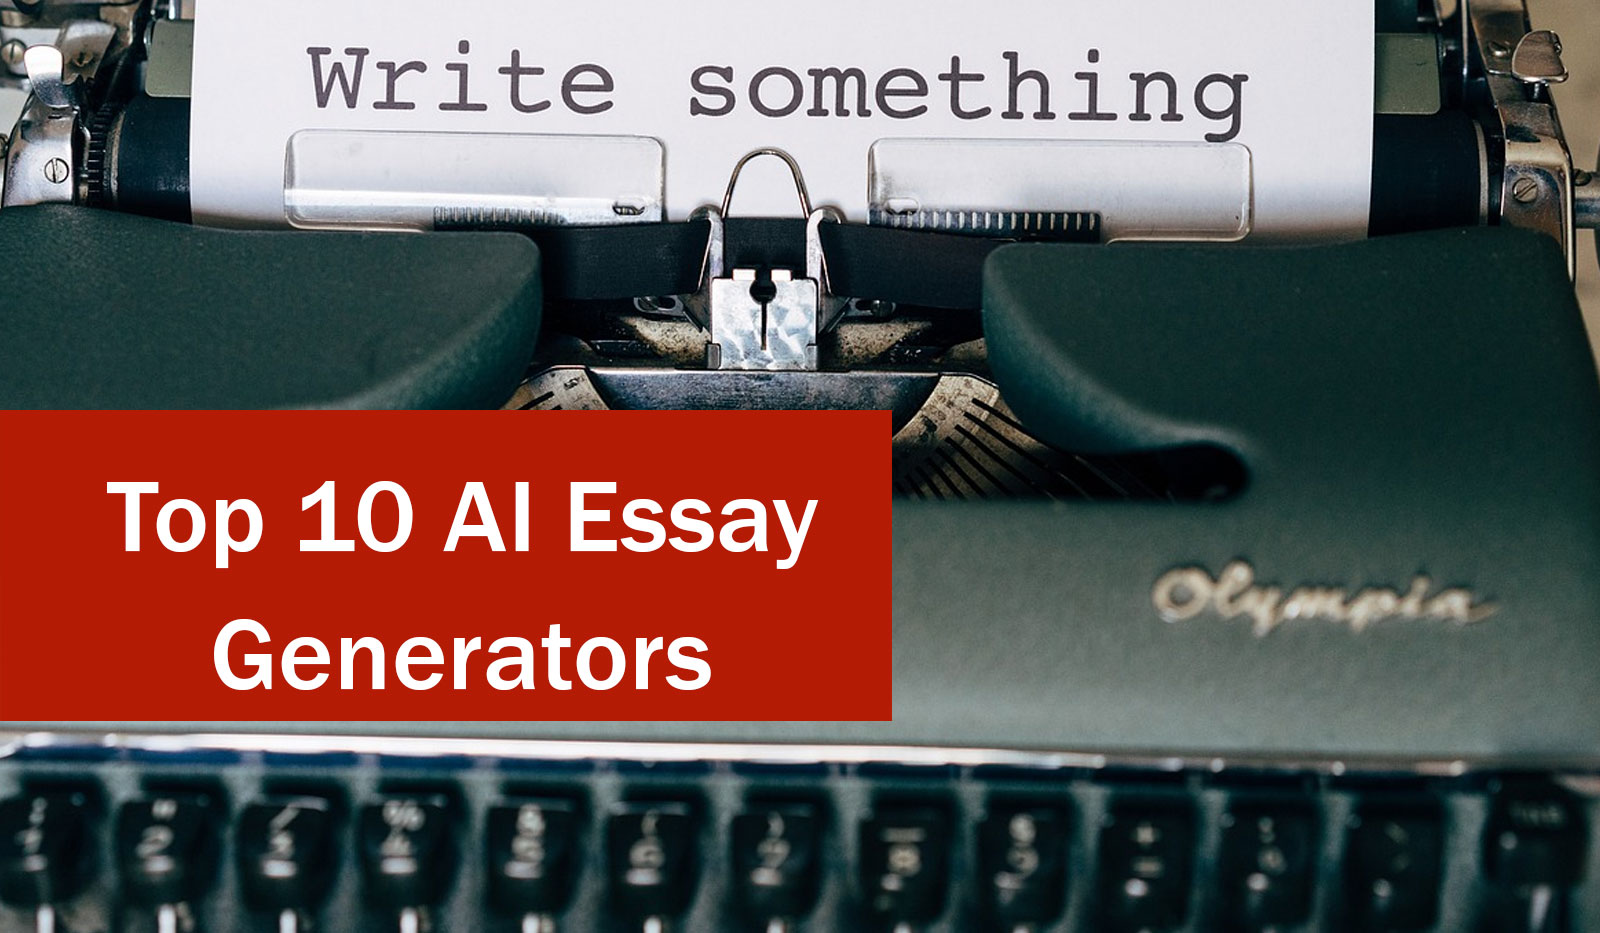 Top AI Essay Generators